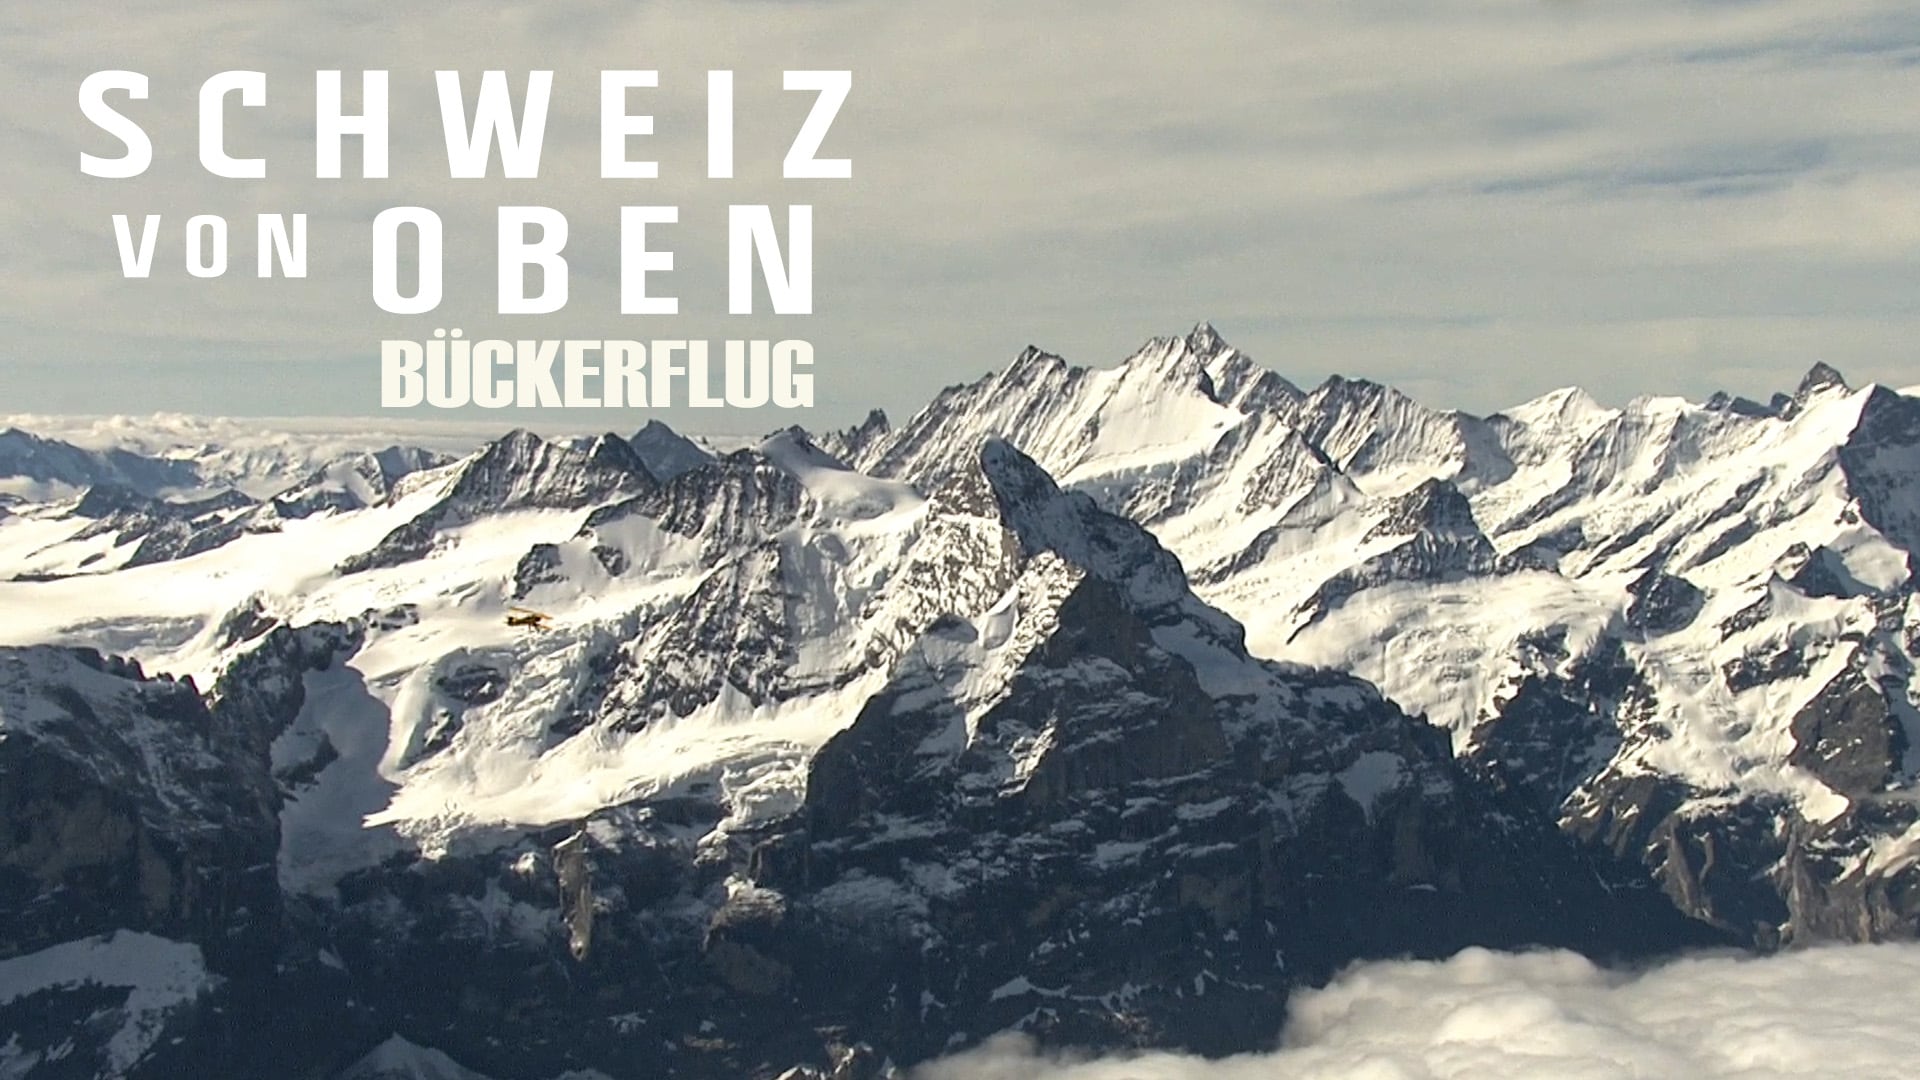 Schweiz von oben - Bückerflug